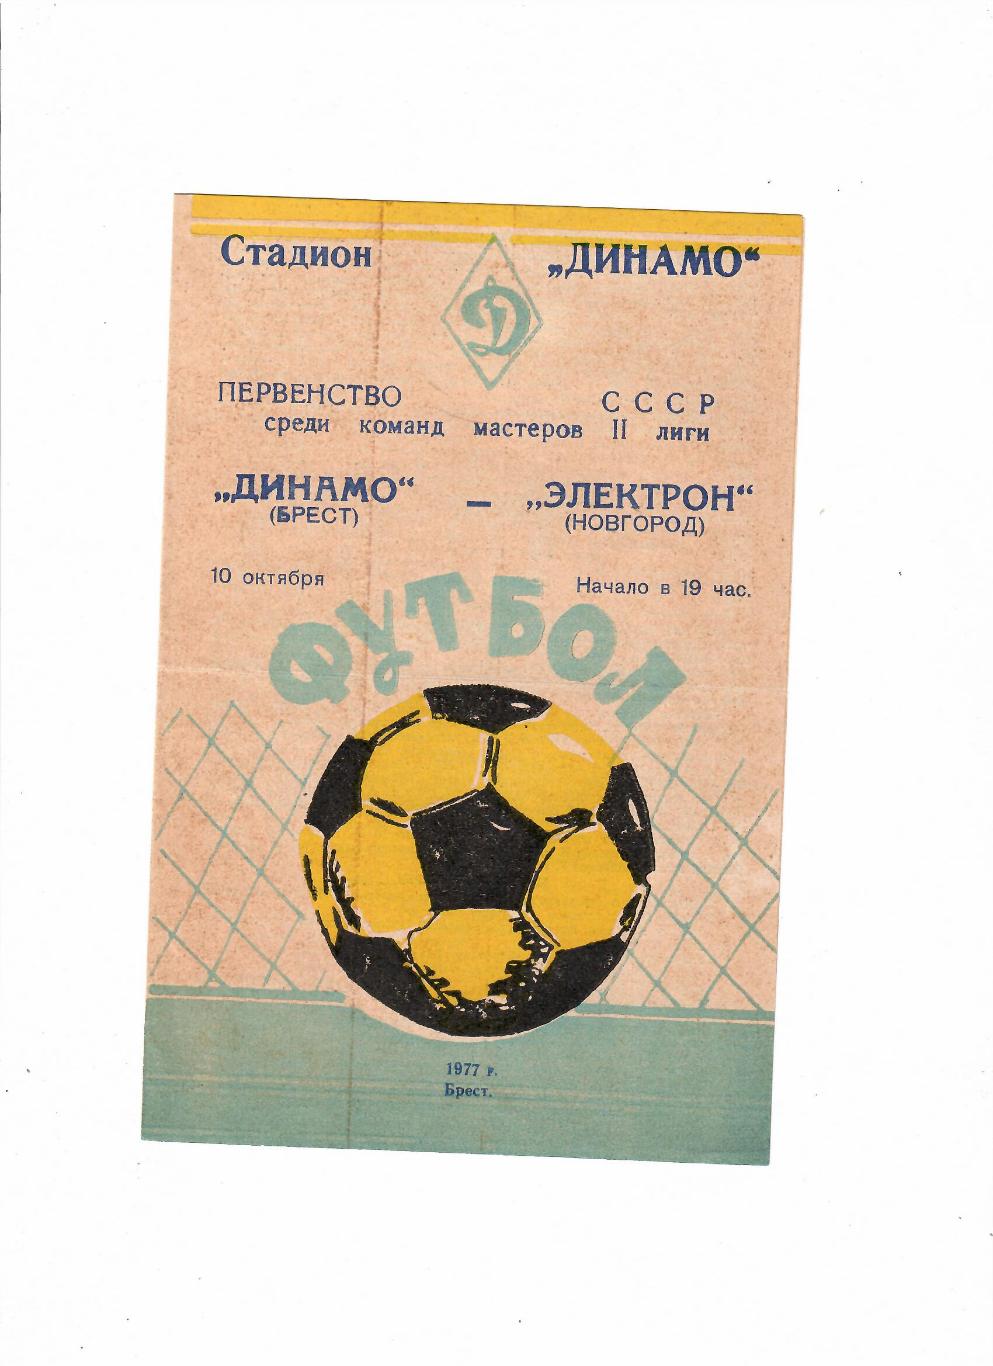 Динамо Брест-Электрон Новгород 1977 1